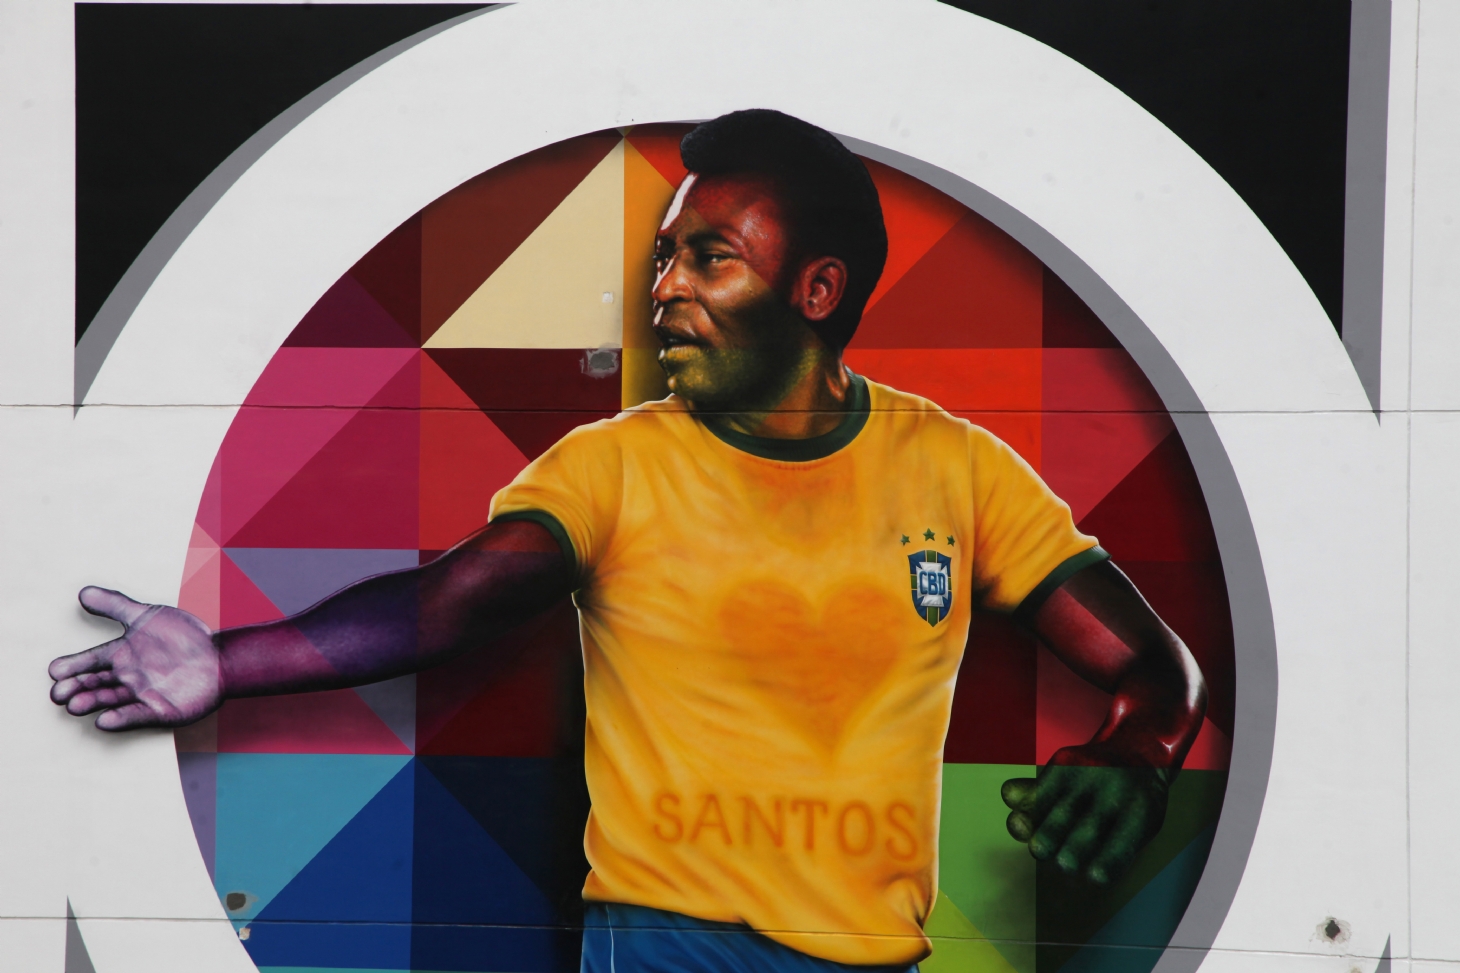 Aniversário de 80 anos de Pelé é um presente para todos! | Jornal da Orla